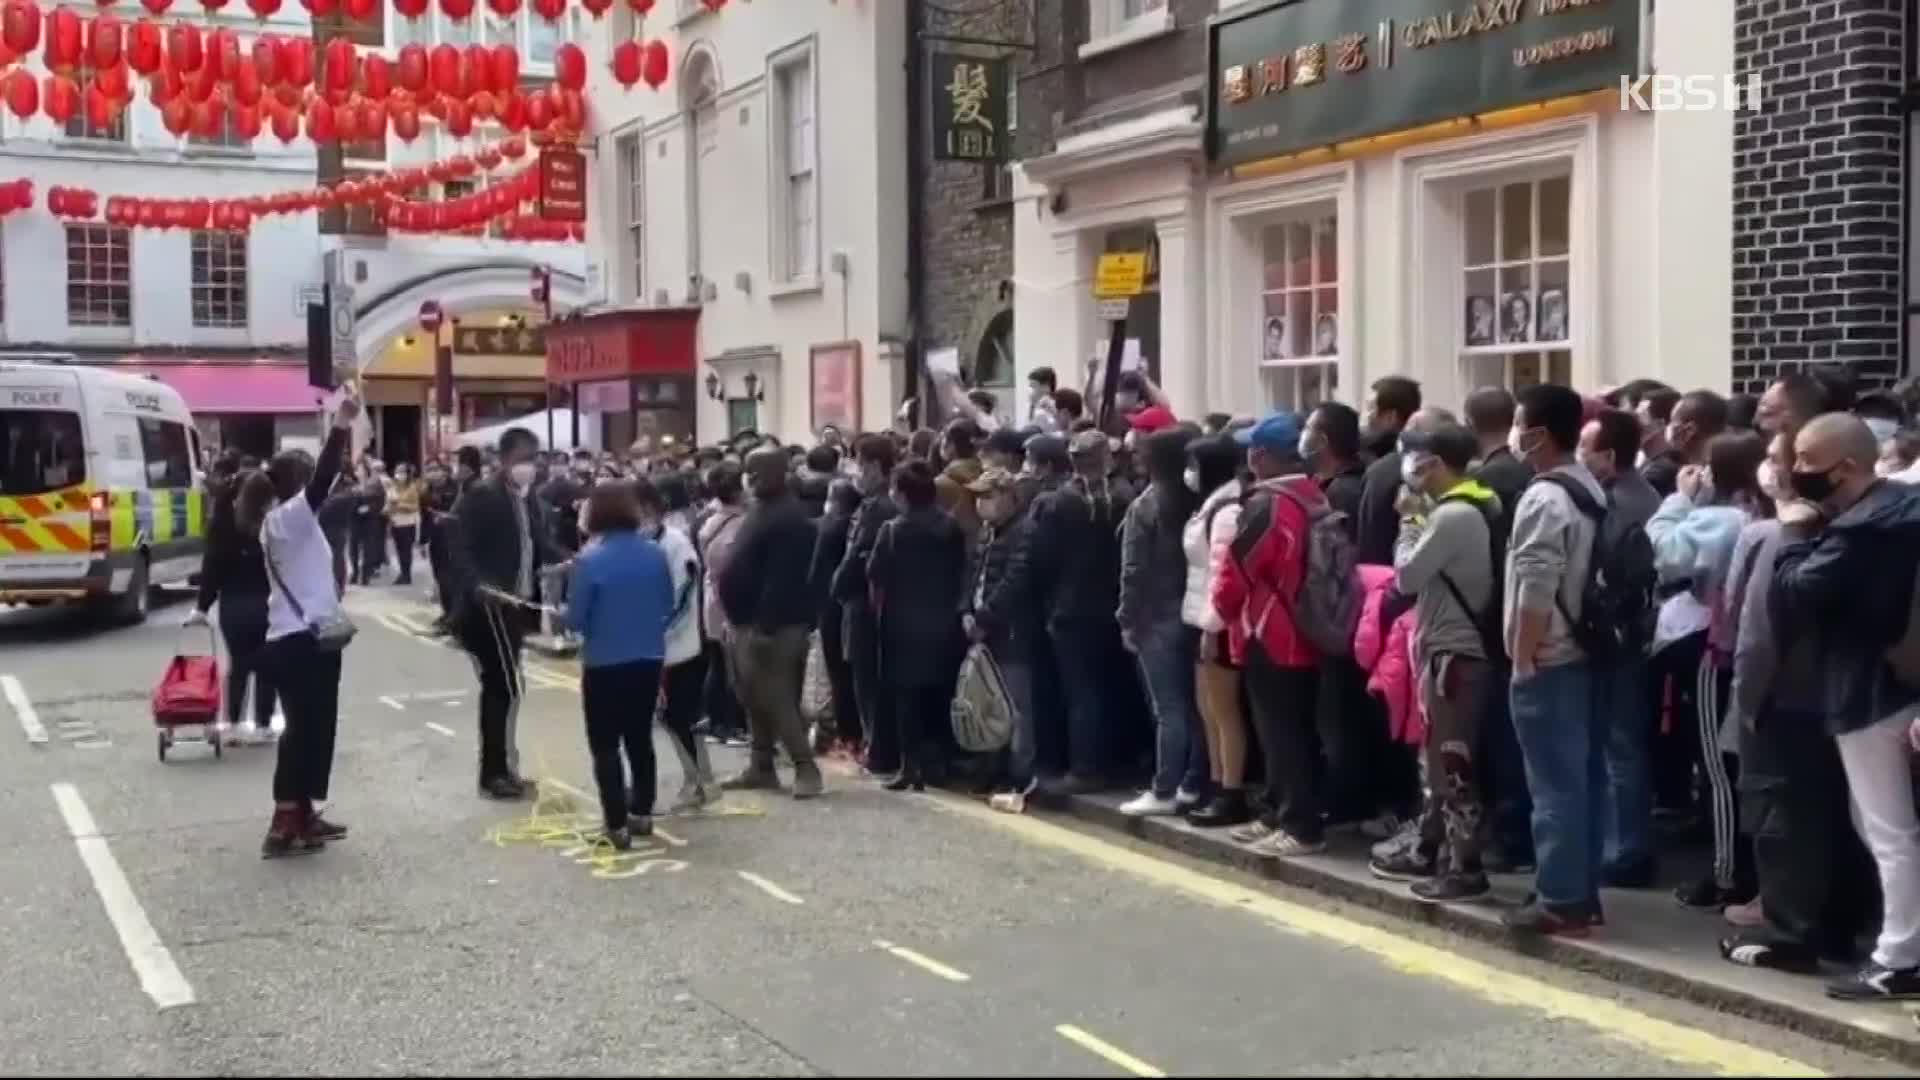 “불법체류자도 접종”…런던 한복판에 중국인 북적